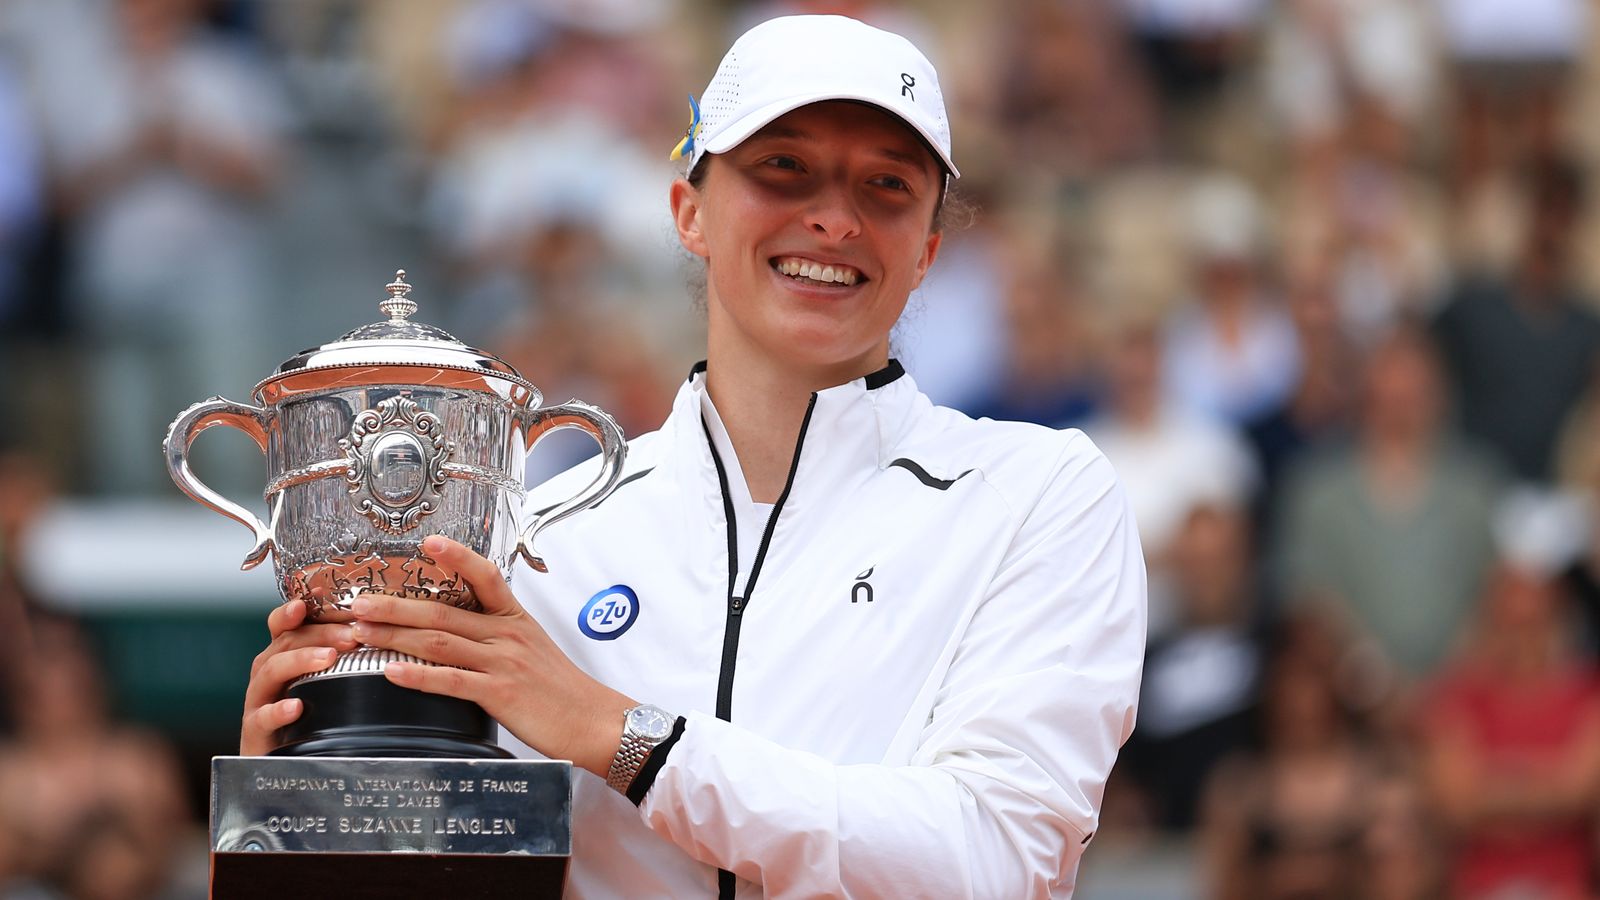 Wimbledon : le numéro 1 mondial Iga Swiatek revient à l’essentiel en quête de gloire |  Actualité Tennis